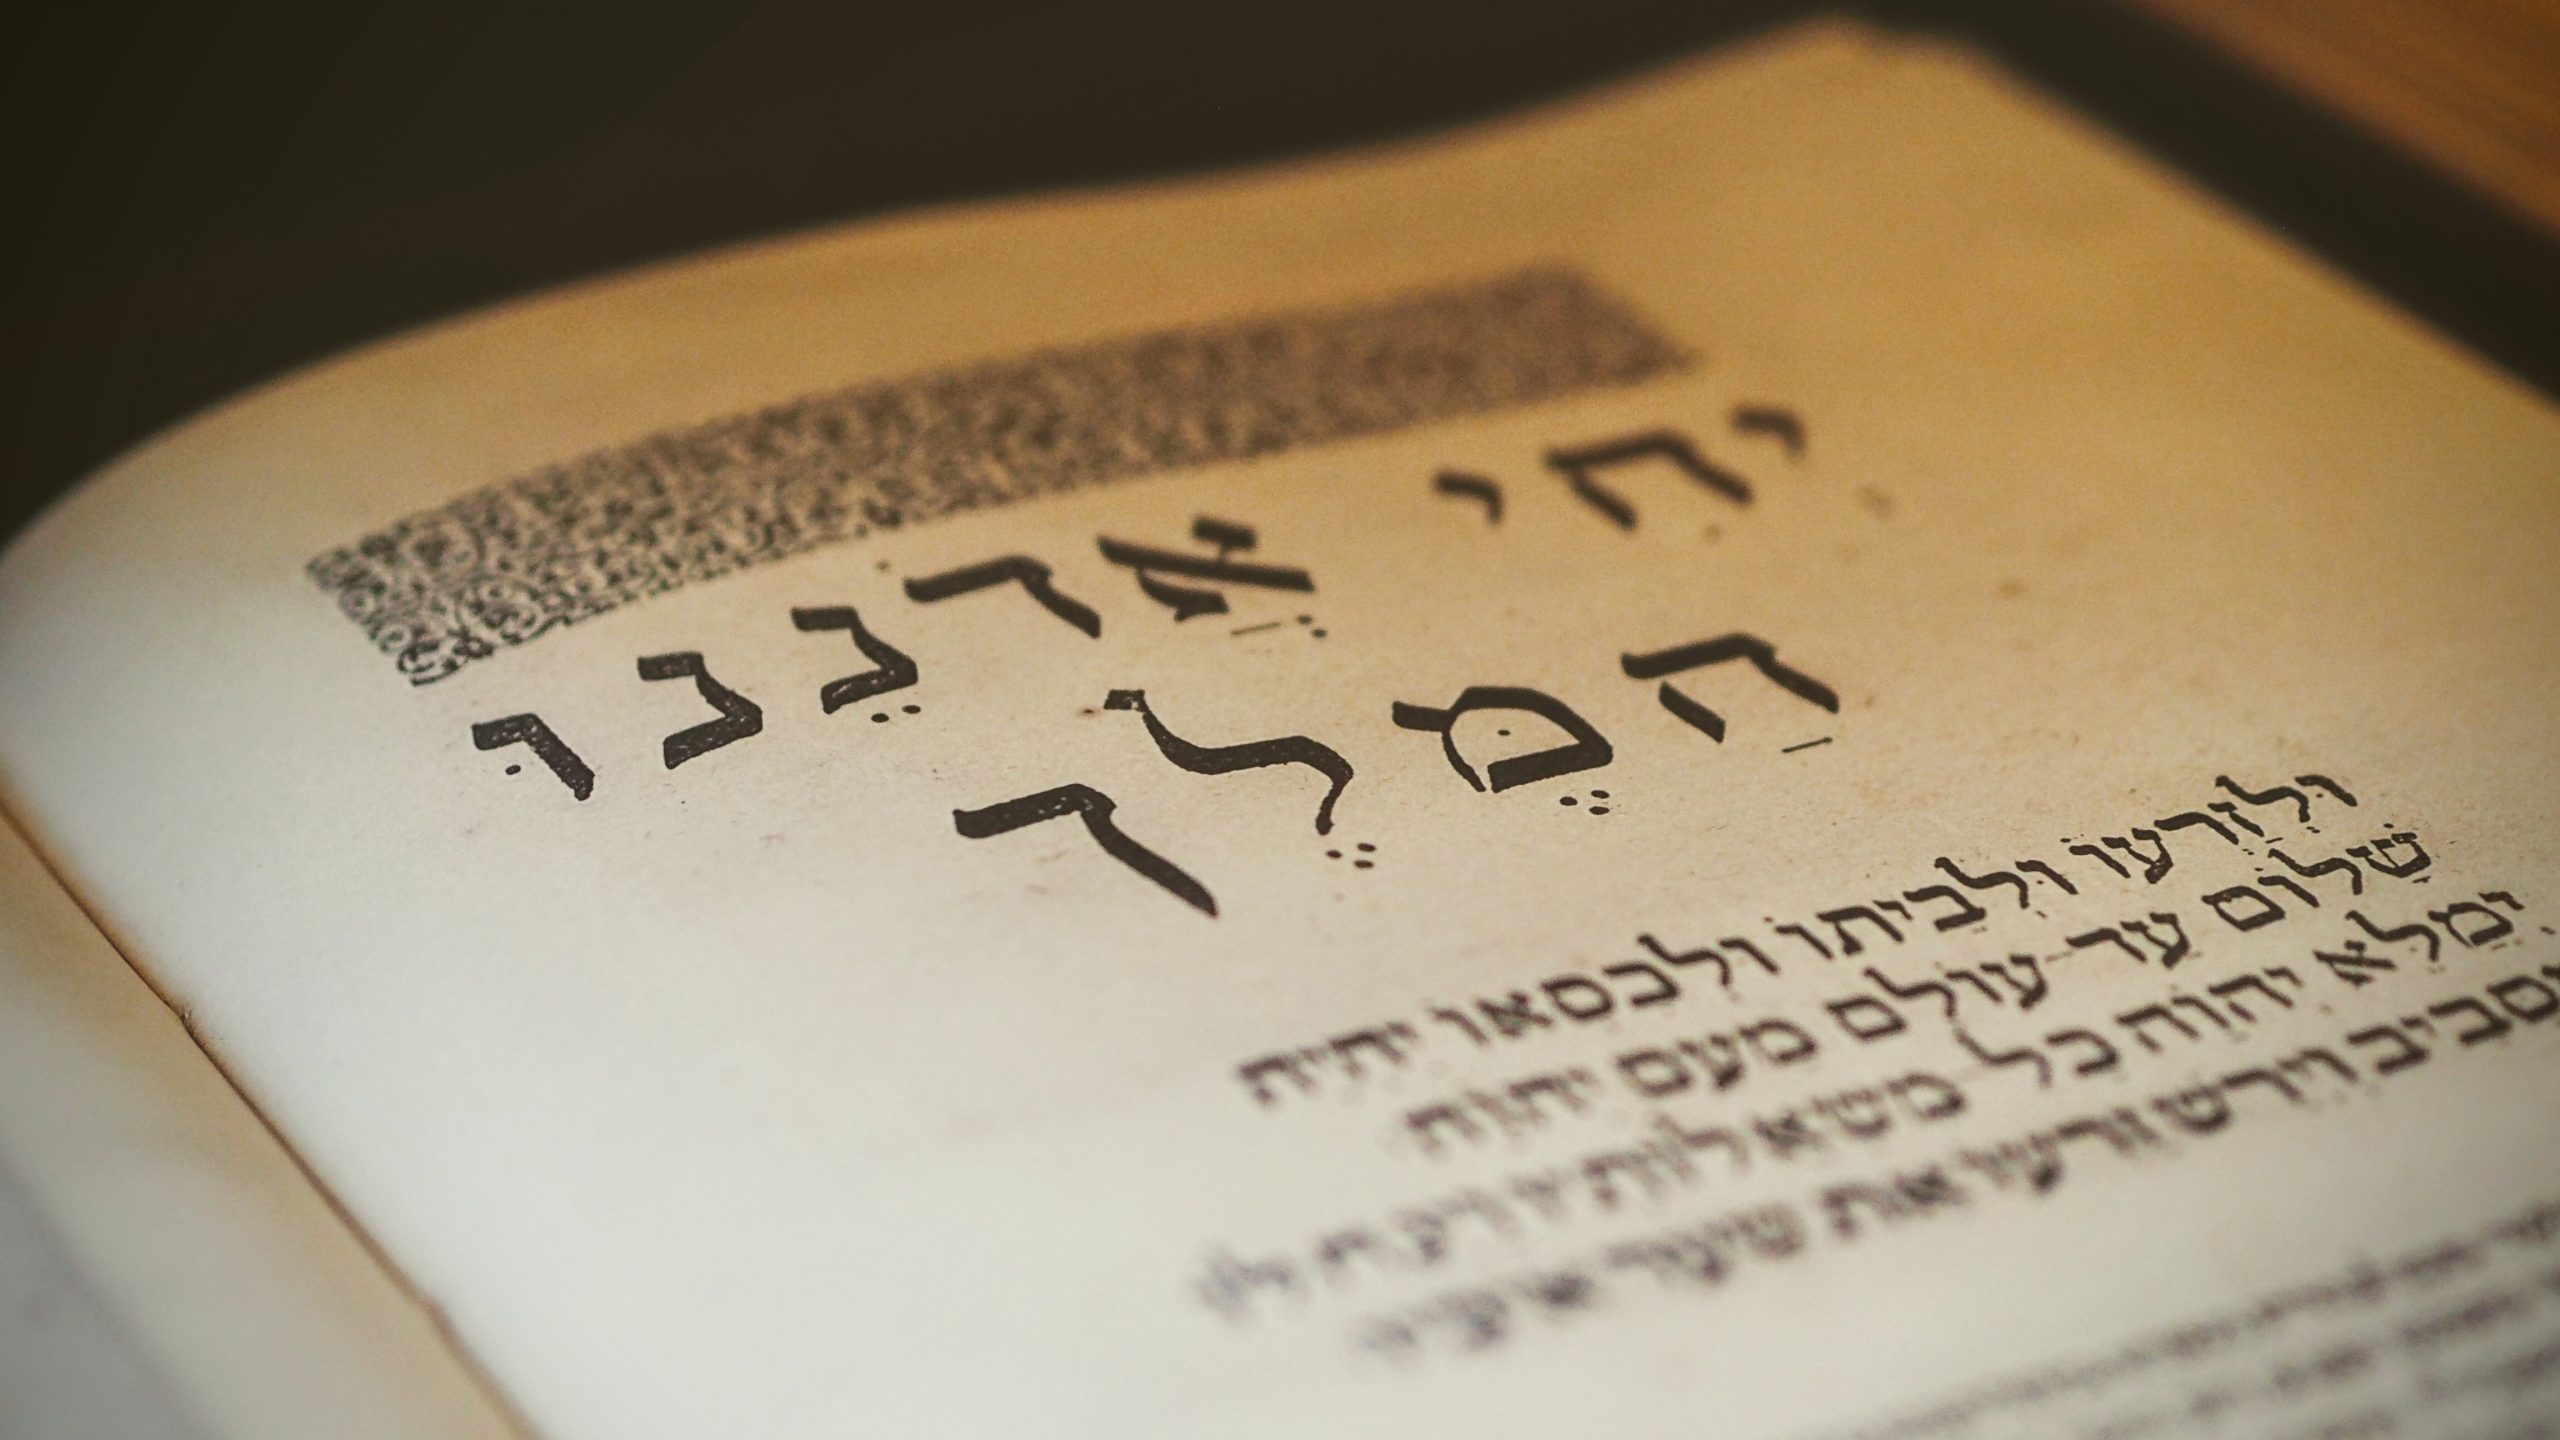 Hebrew words